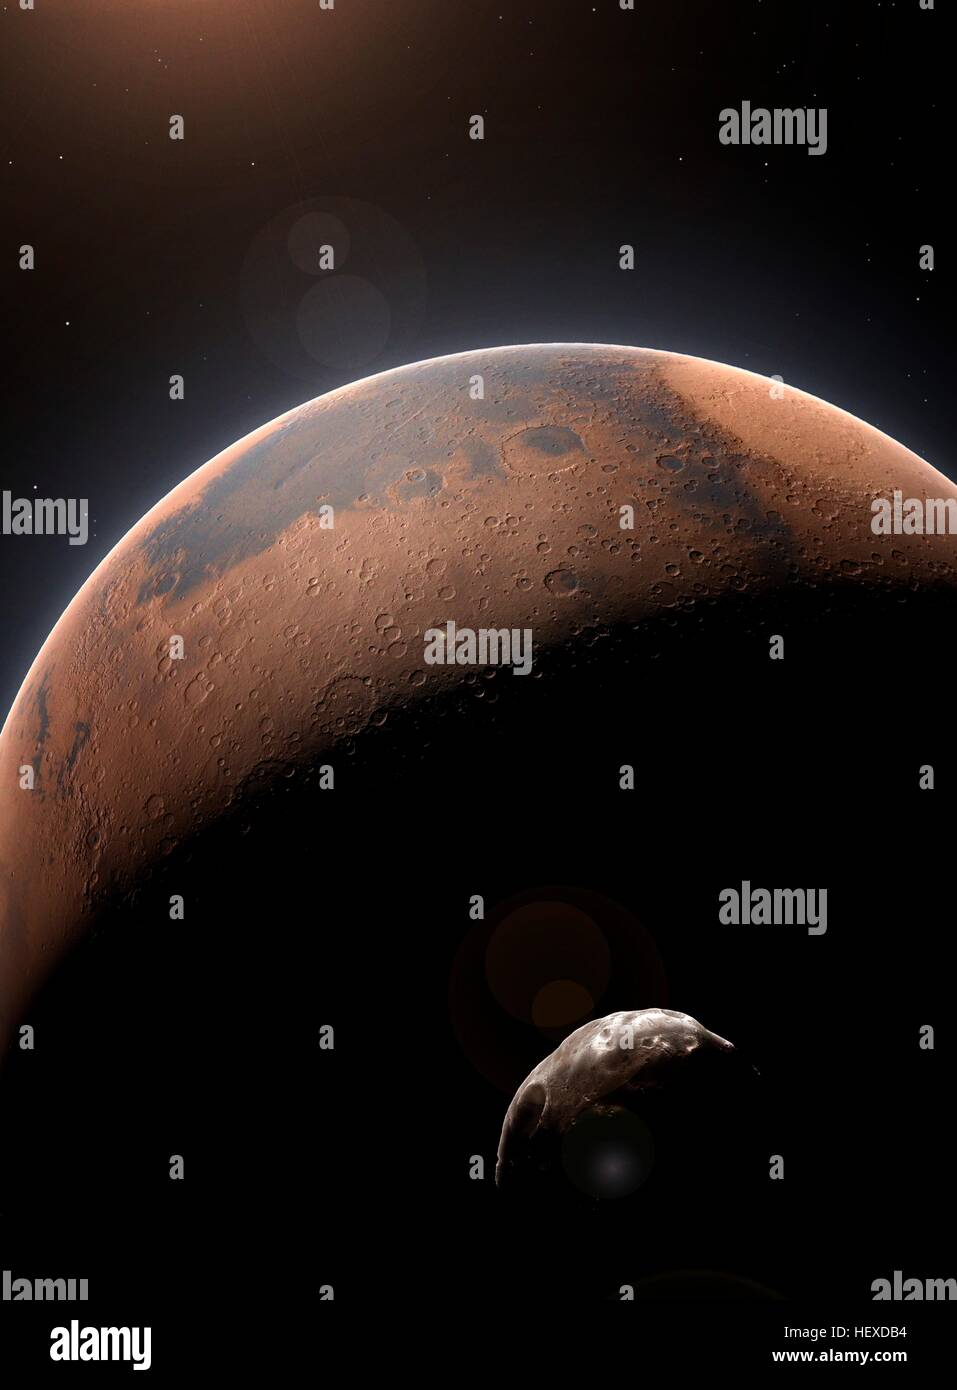 Una impresión del Planeta Rojo, Marte, el segundo planeta más pequeño del Sistema Solar (después de Mercurio). Su recóndita luna Fobos, es visto en el primer plano. Foto de stock